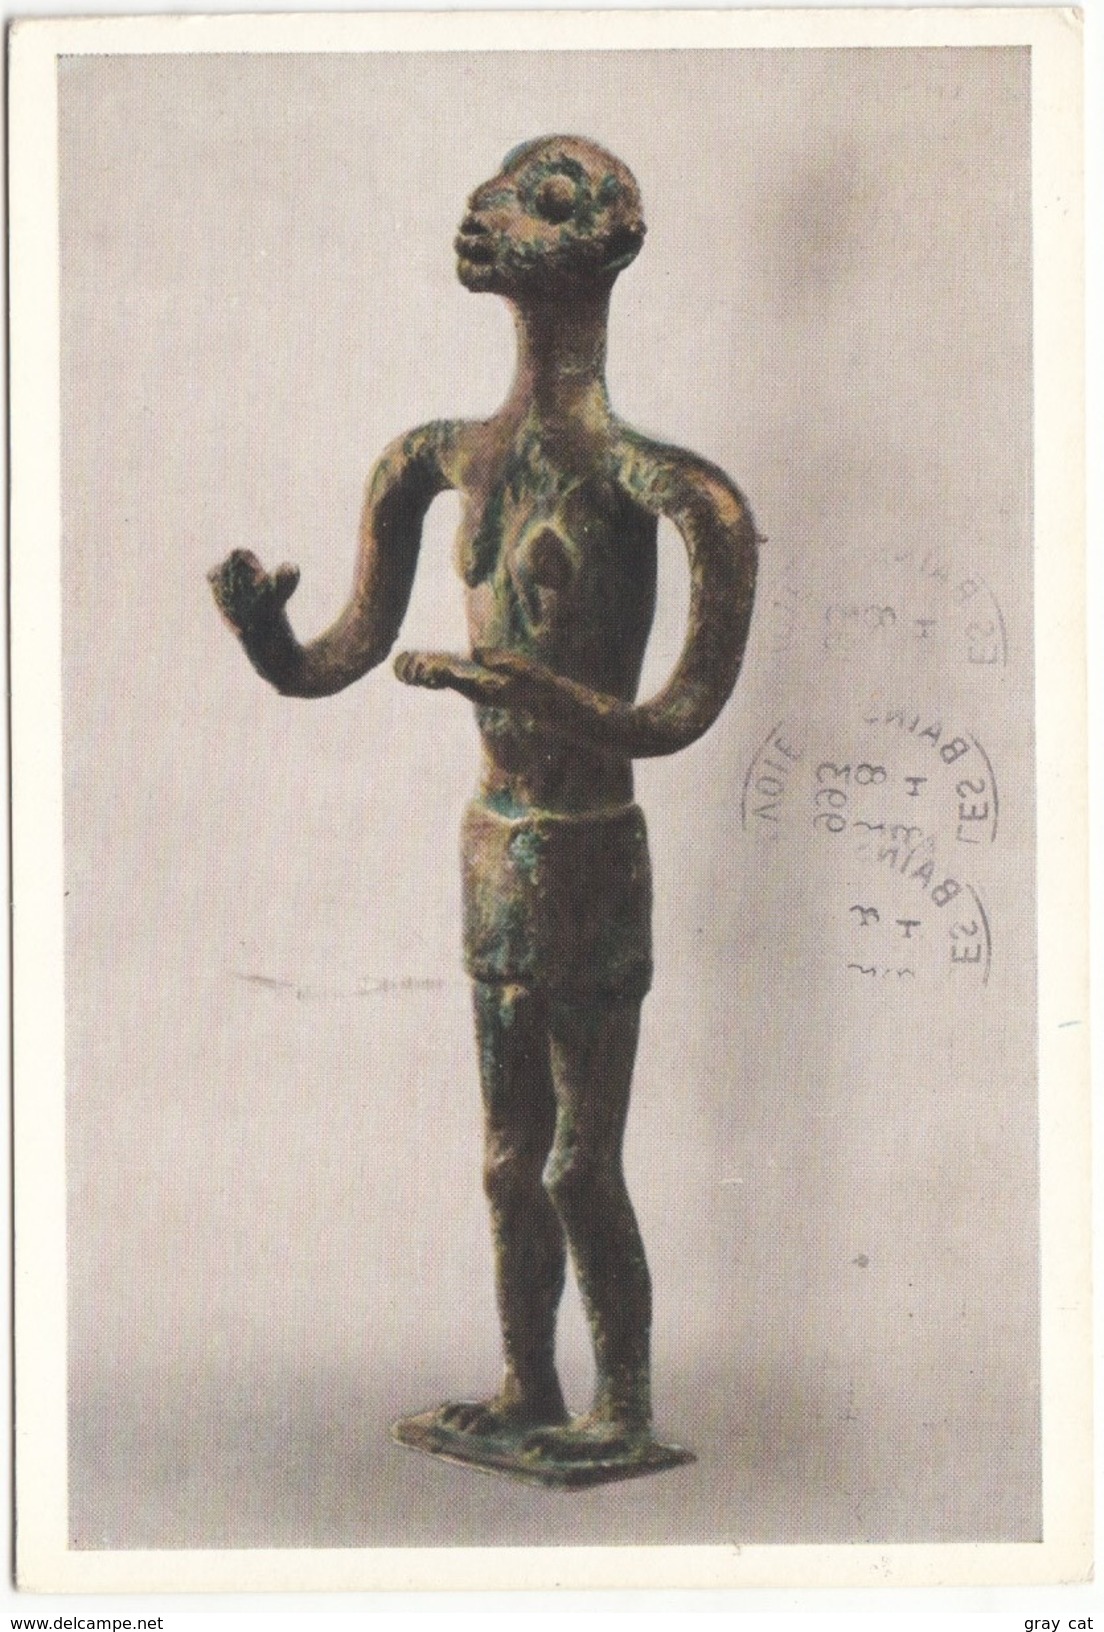 IL GESTICOLANTE, Bronzetto Nuragico, Museo Nazionale Archeologico Di Cagliari, 1993 Used Postcard [19209] - Sculpturen